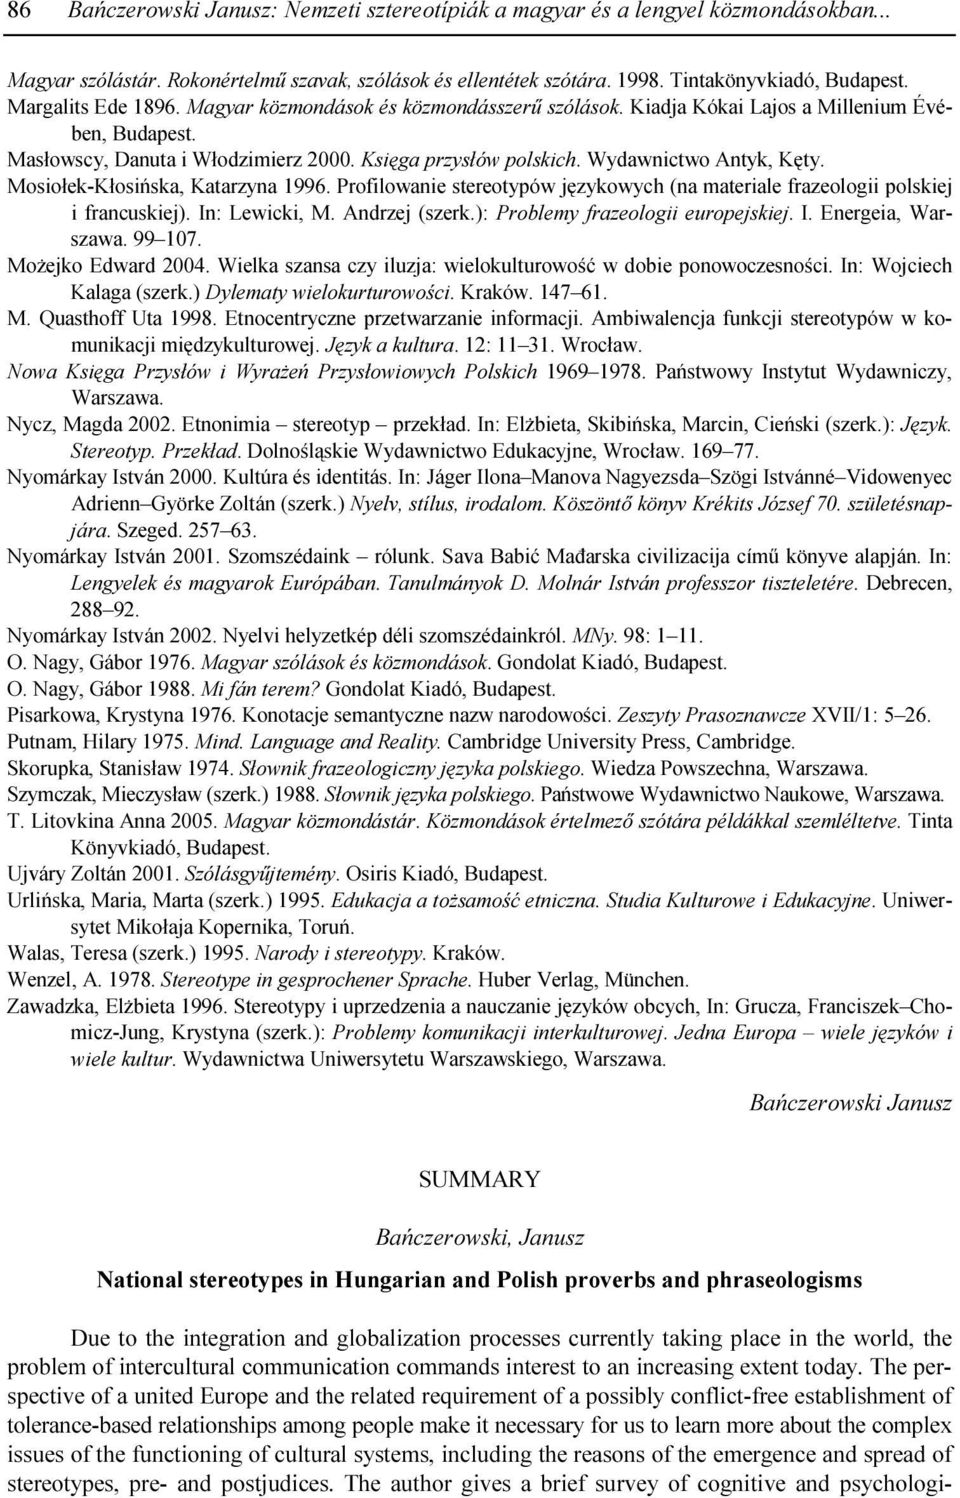 Wydawnictwo Antyk, Kęty. Mosiołek-Kłosińska, Katarzyna 1996. Profilowanie stereotypów językowych (na materiale frazeologii polskiej i francuskiej). In: Lewicki, M. Andrzej (szerk.